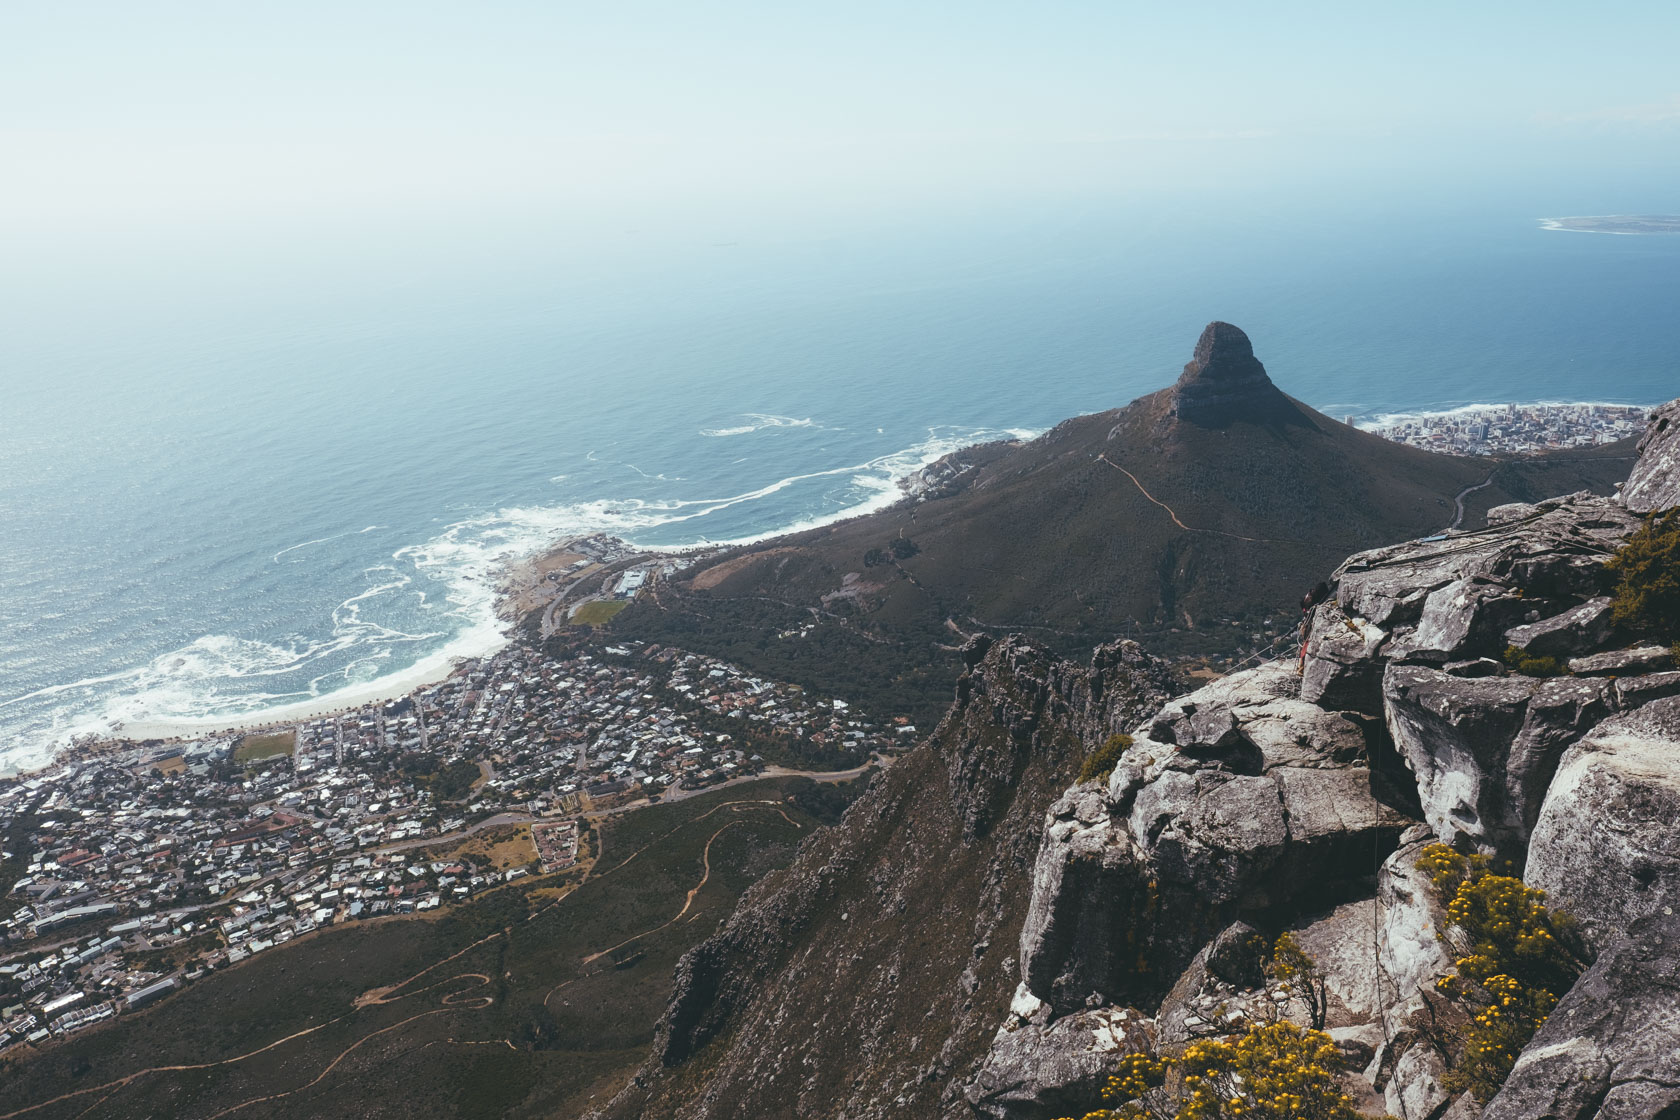 Lion's Head, Cape Town